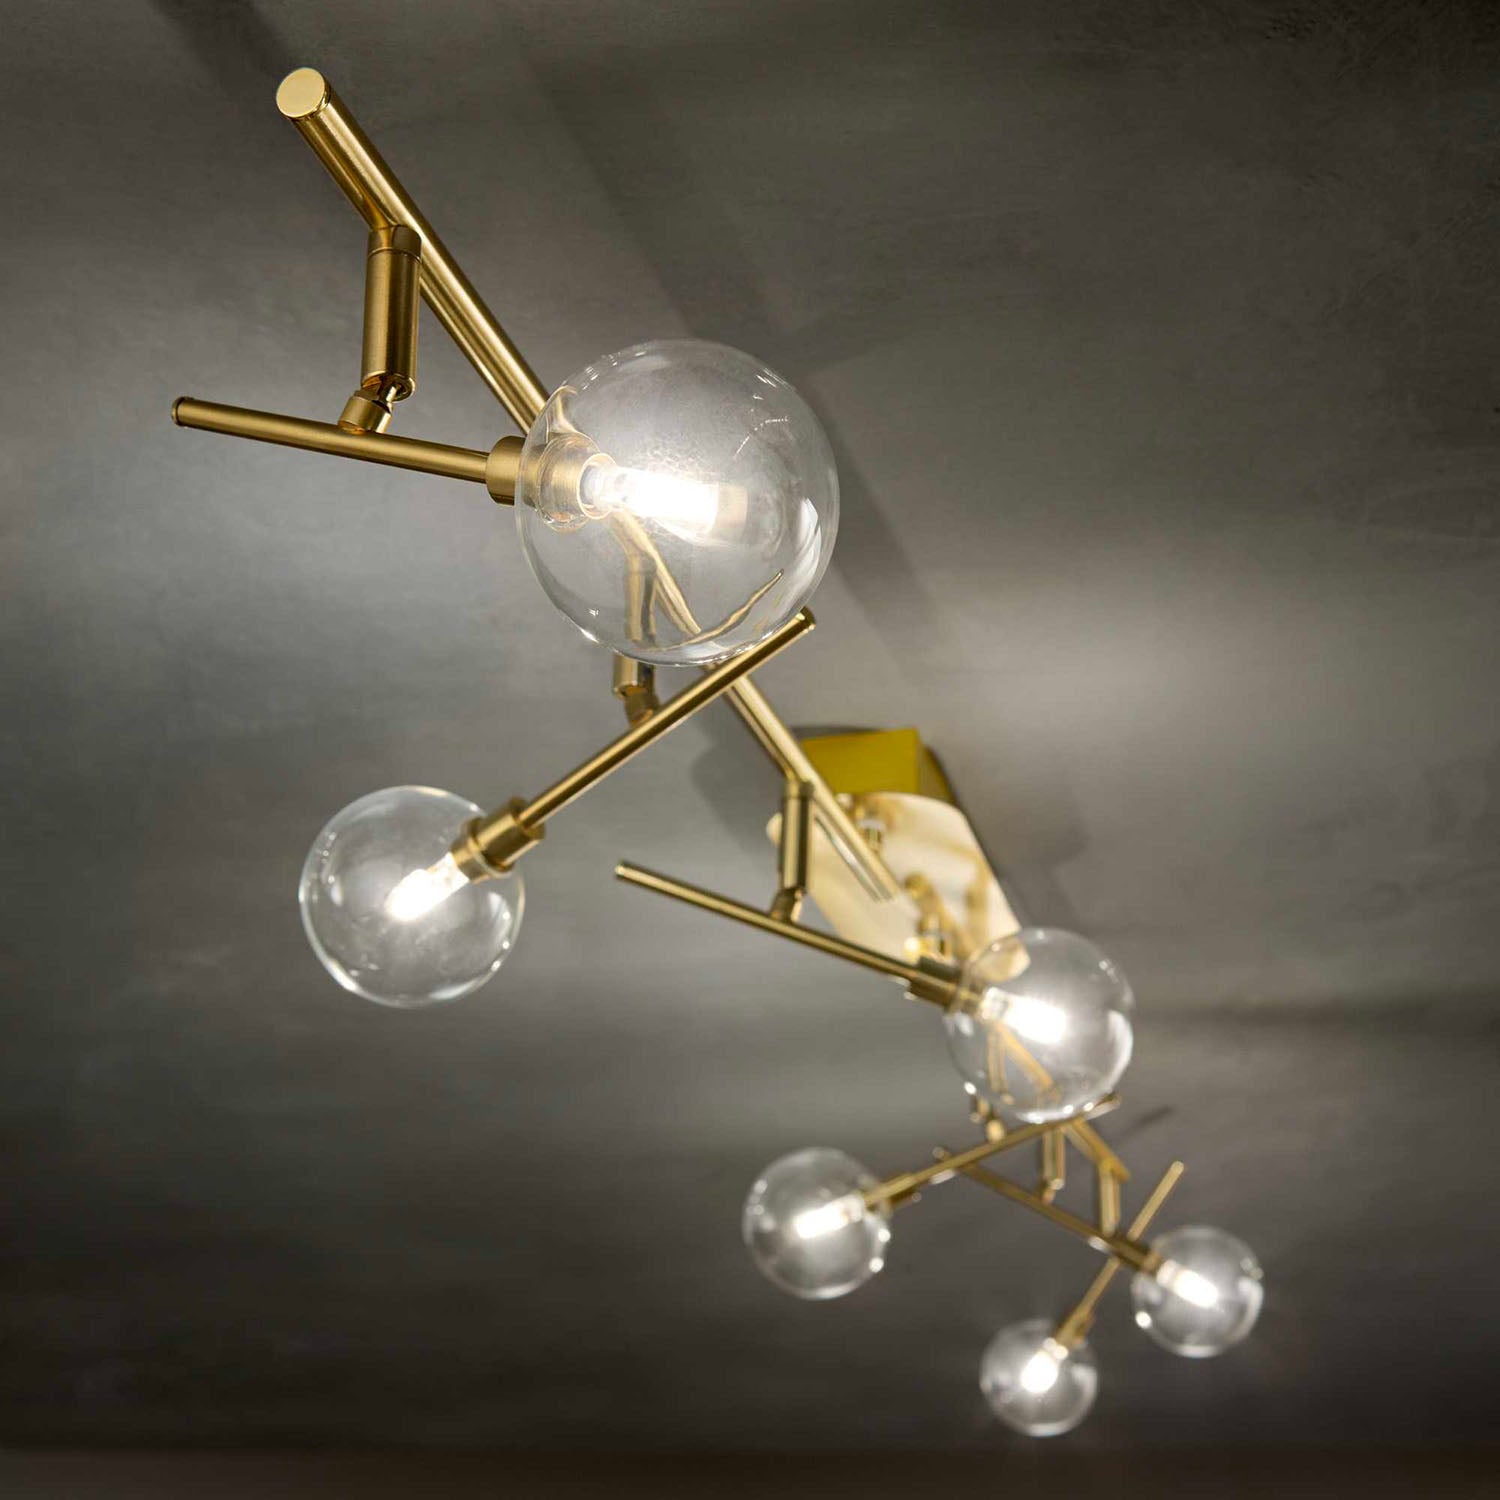 MARACAS - Gold ceiling light with glass ball spots